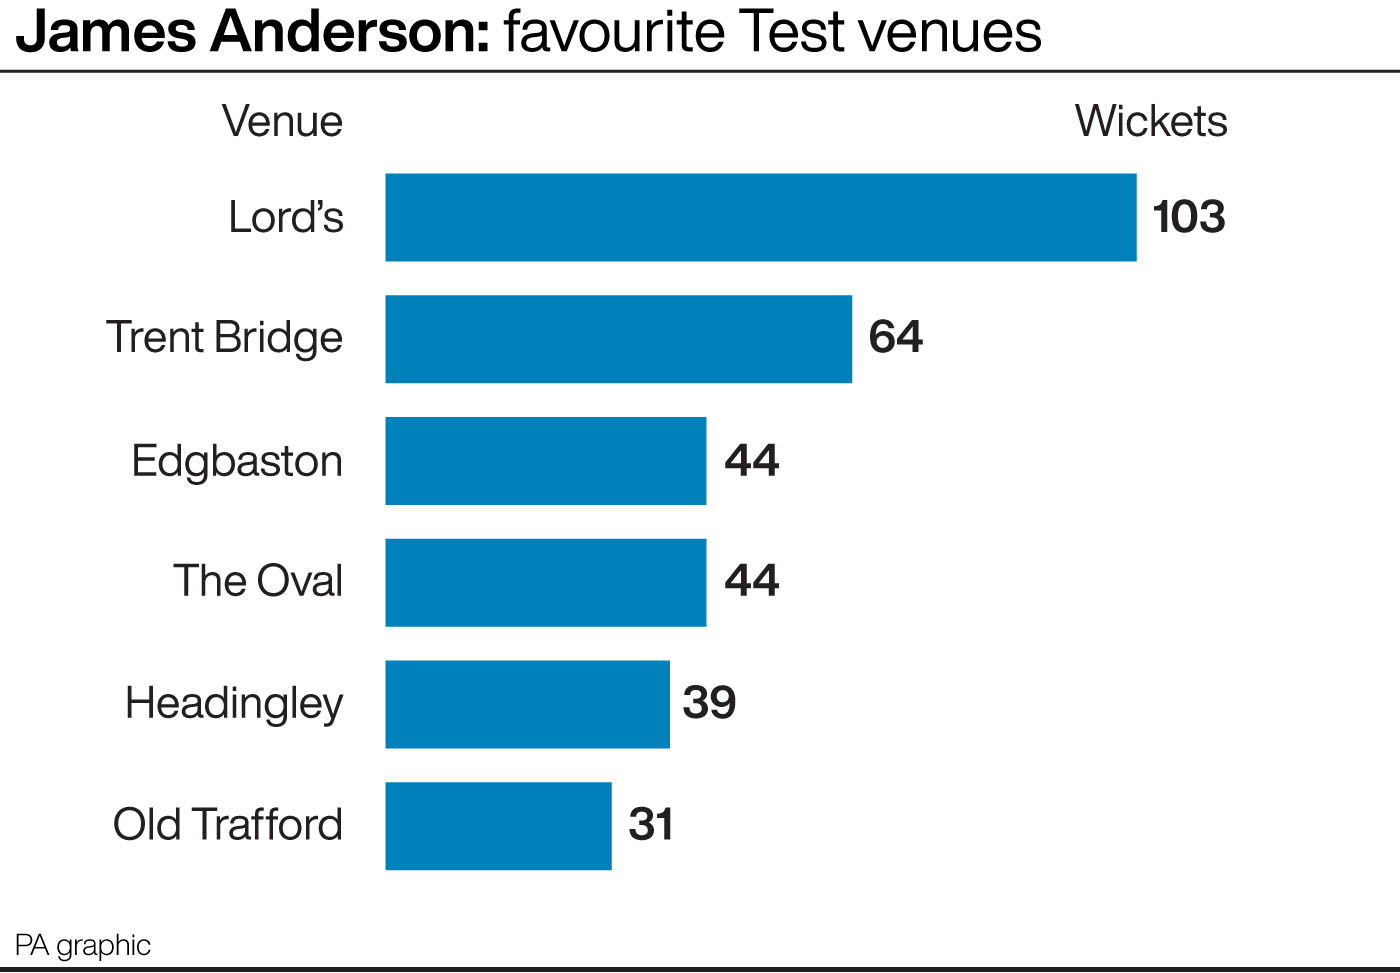 James Anderson: Favourite Test venues